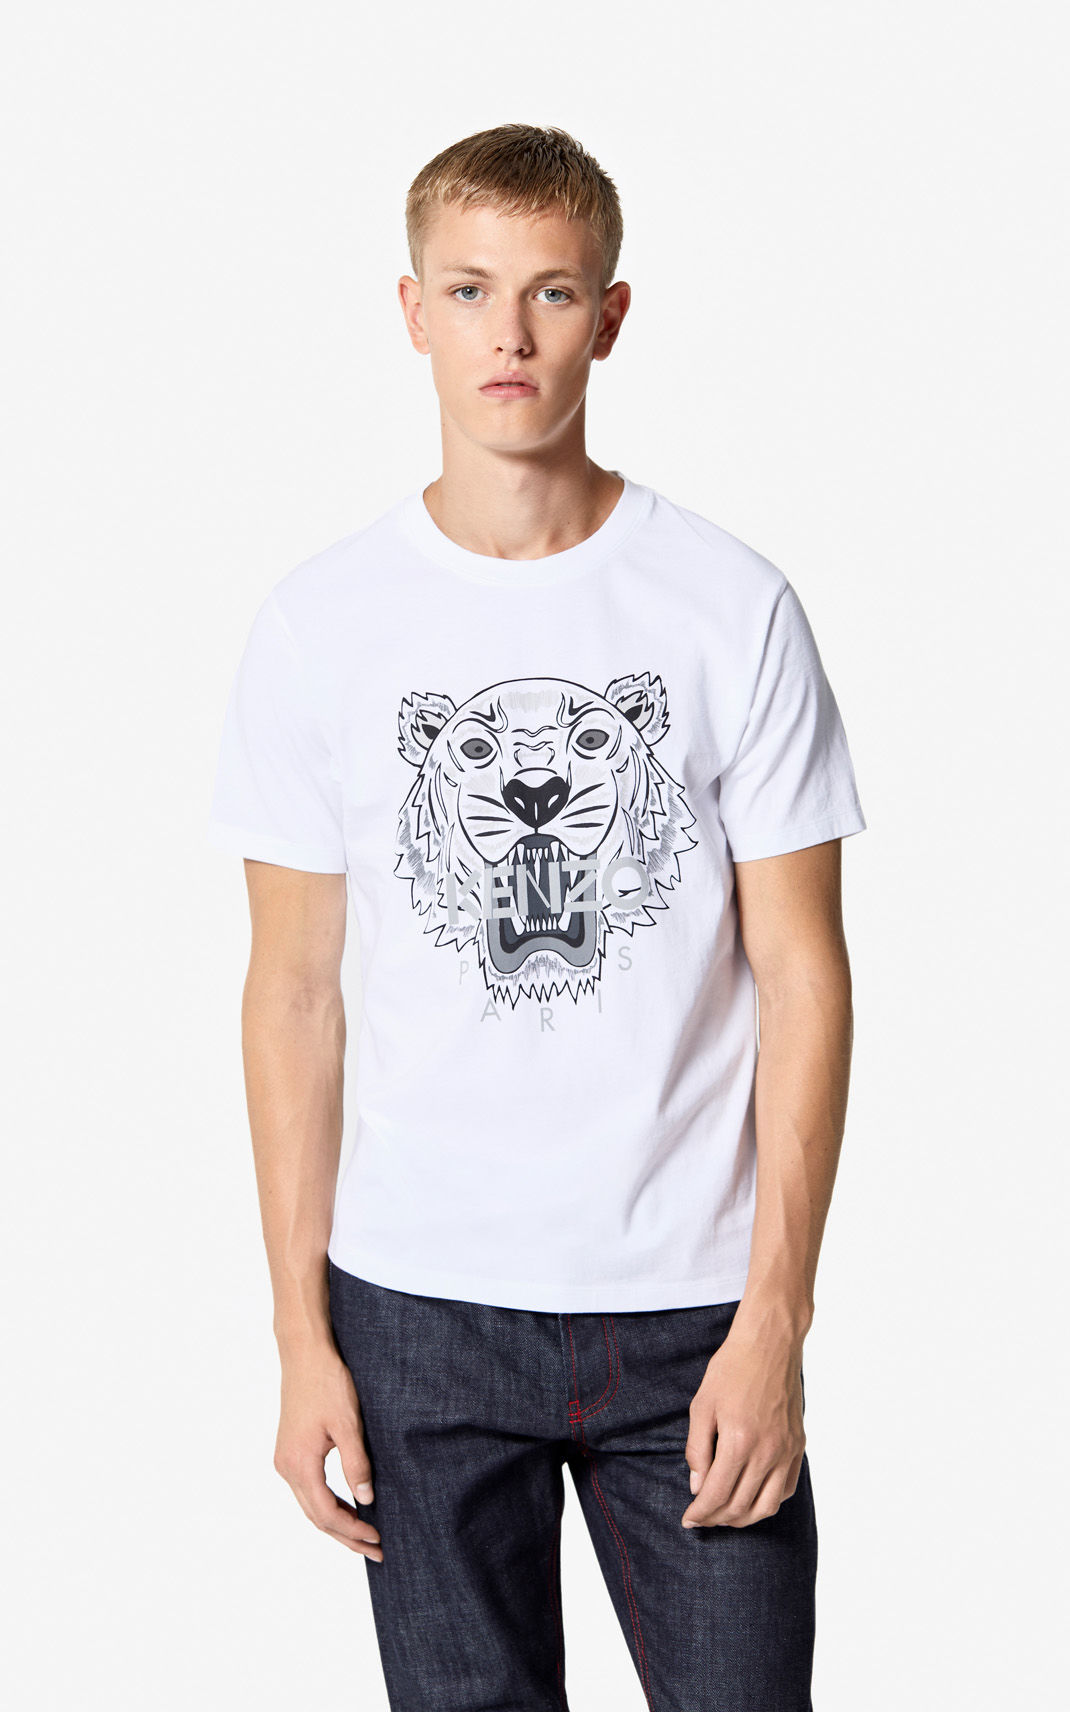 Kenzo Tiger T-shirt (White) - Bonjor Outlet